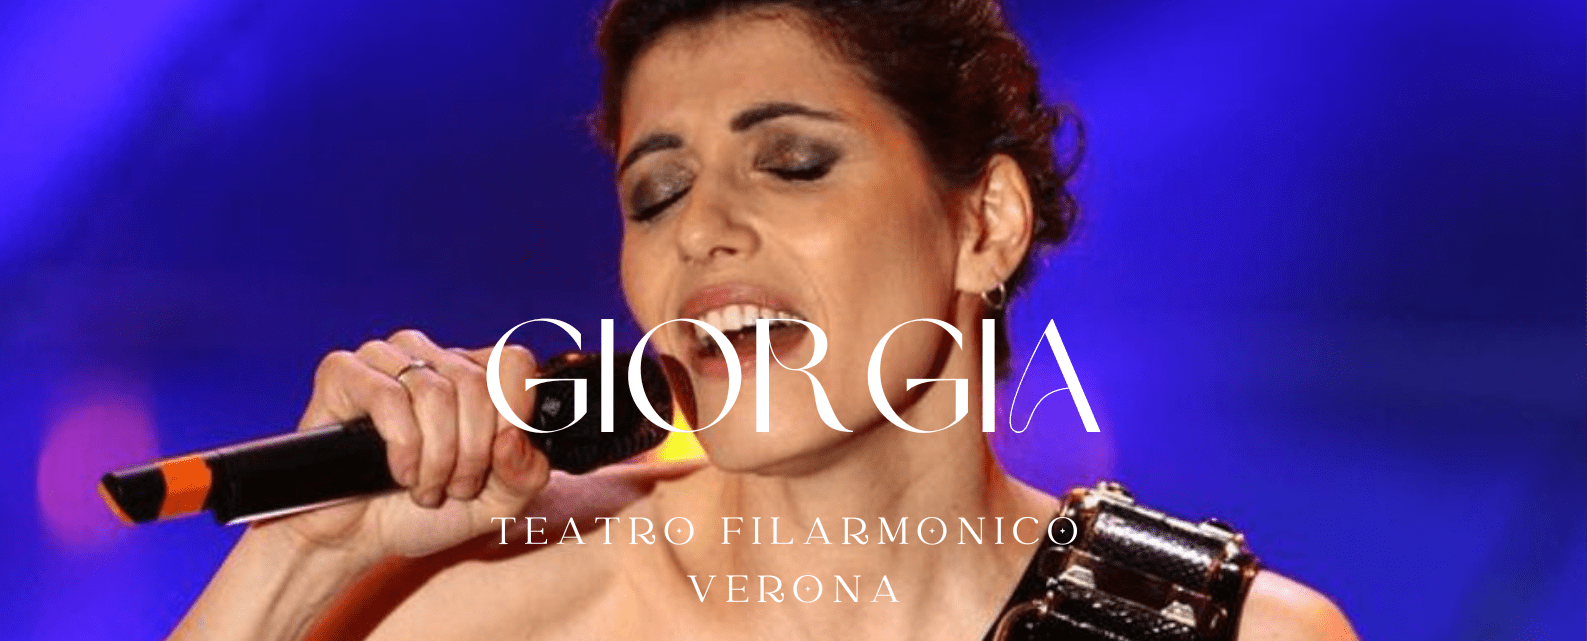 giorgia-tickets-verona-biglietti-concerto-filarmonico